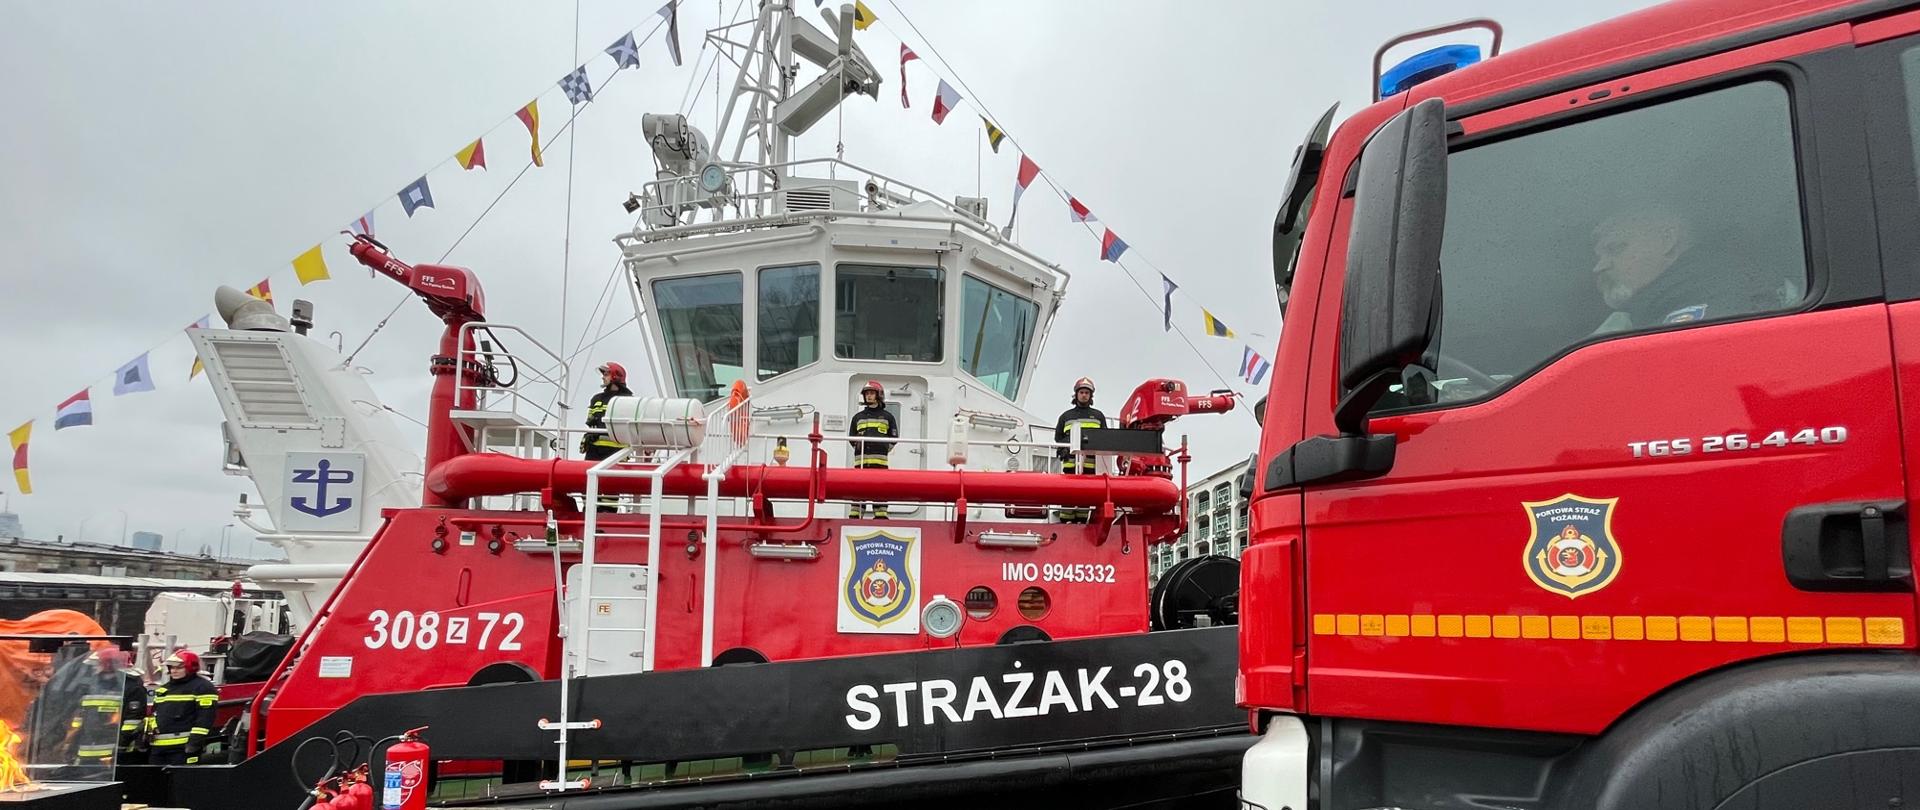 Statek Strażak 28, na nim strażacy Portowej Strazy Pożarnej w umundurowaniu, na zdjęciu znajduje się także bok samochodu ratowniczo gaśniczego Portowej Straży Pożarnej